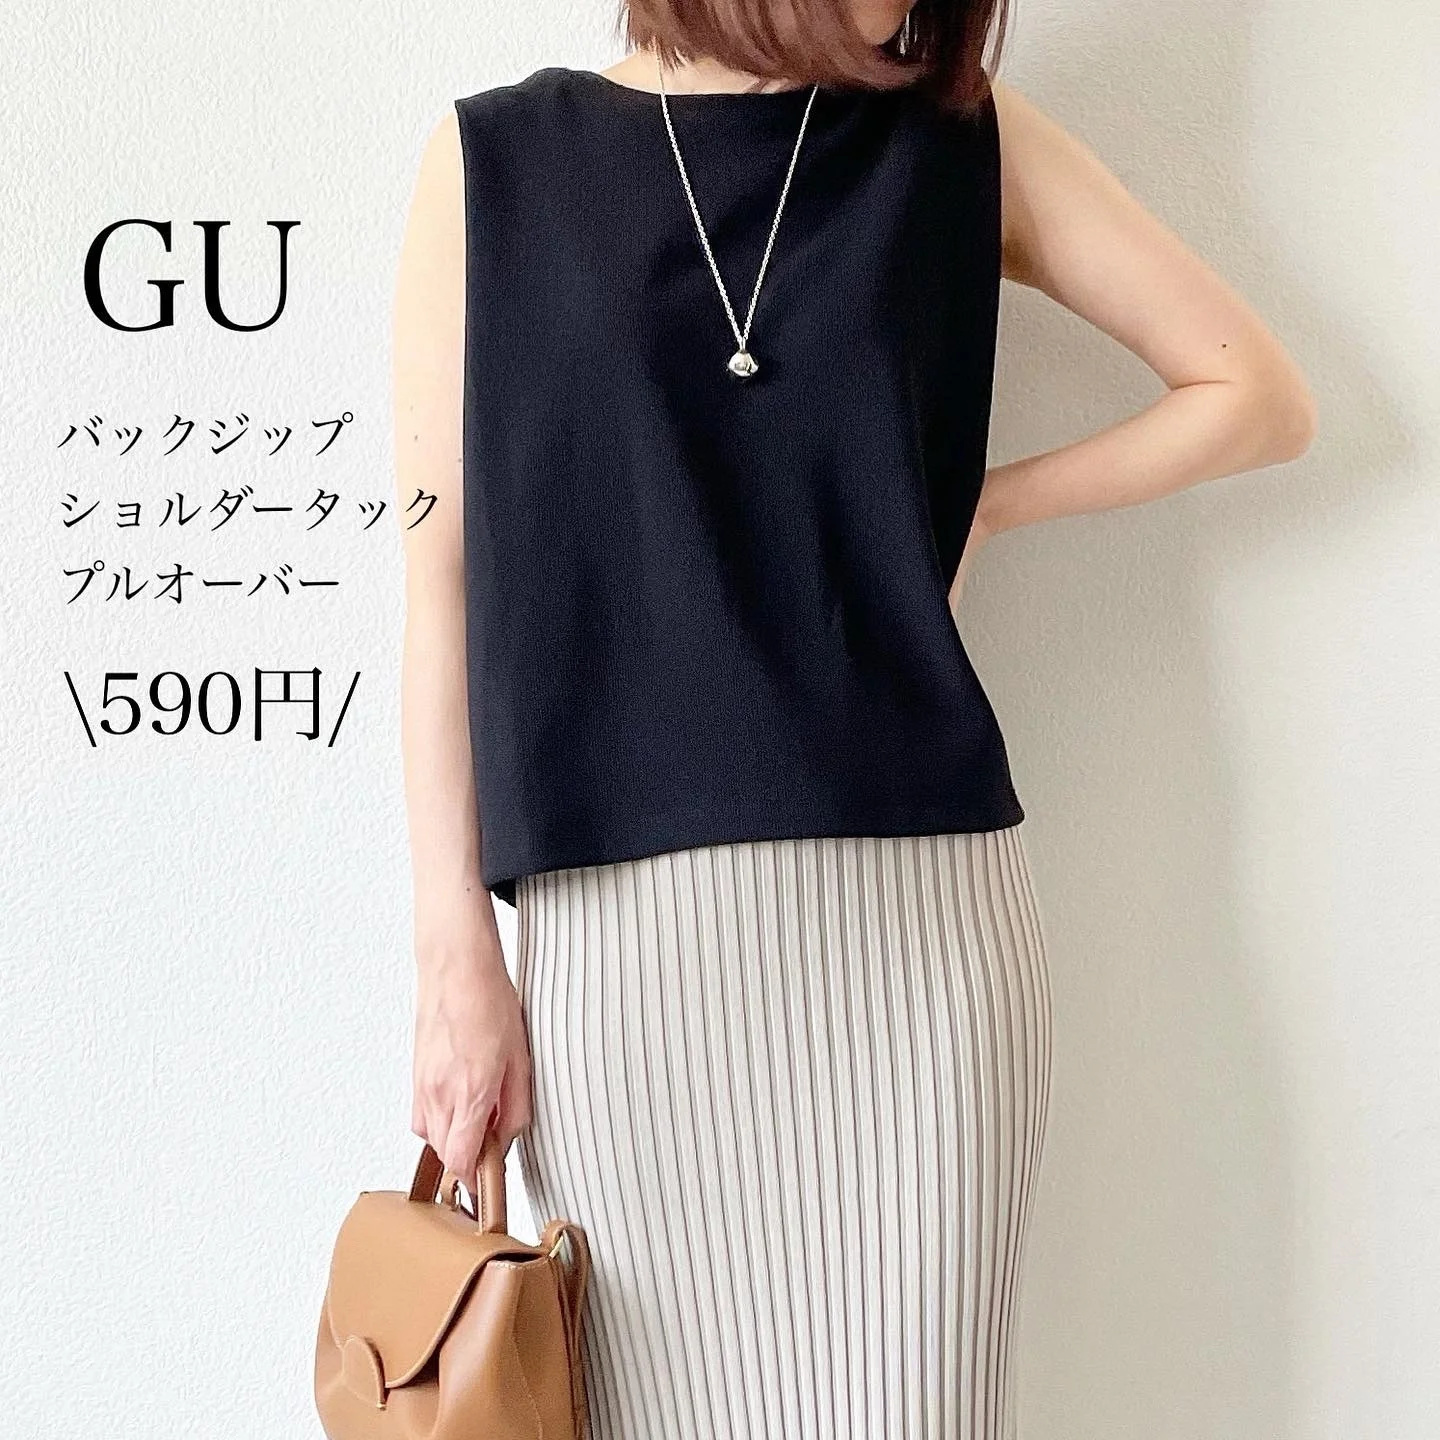 GU590円！値下げトップスで着回し【tomomiyuコーデ】 | ファッション誌